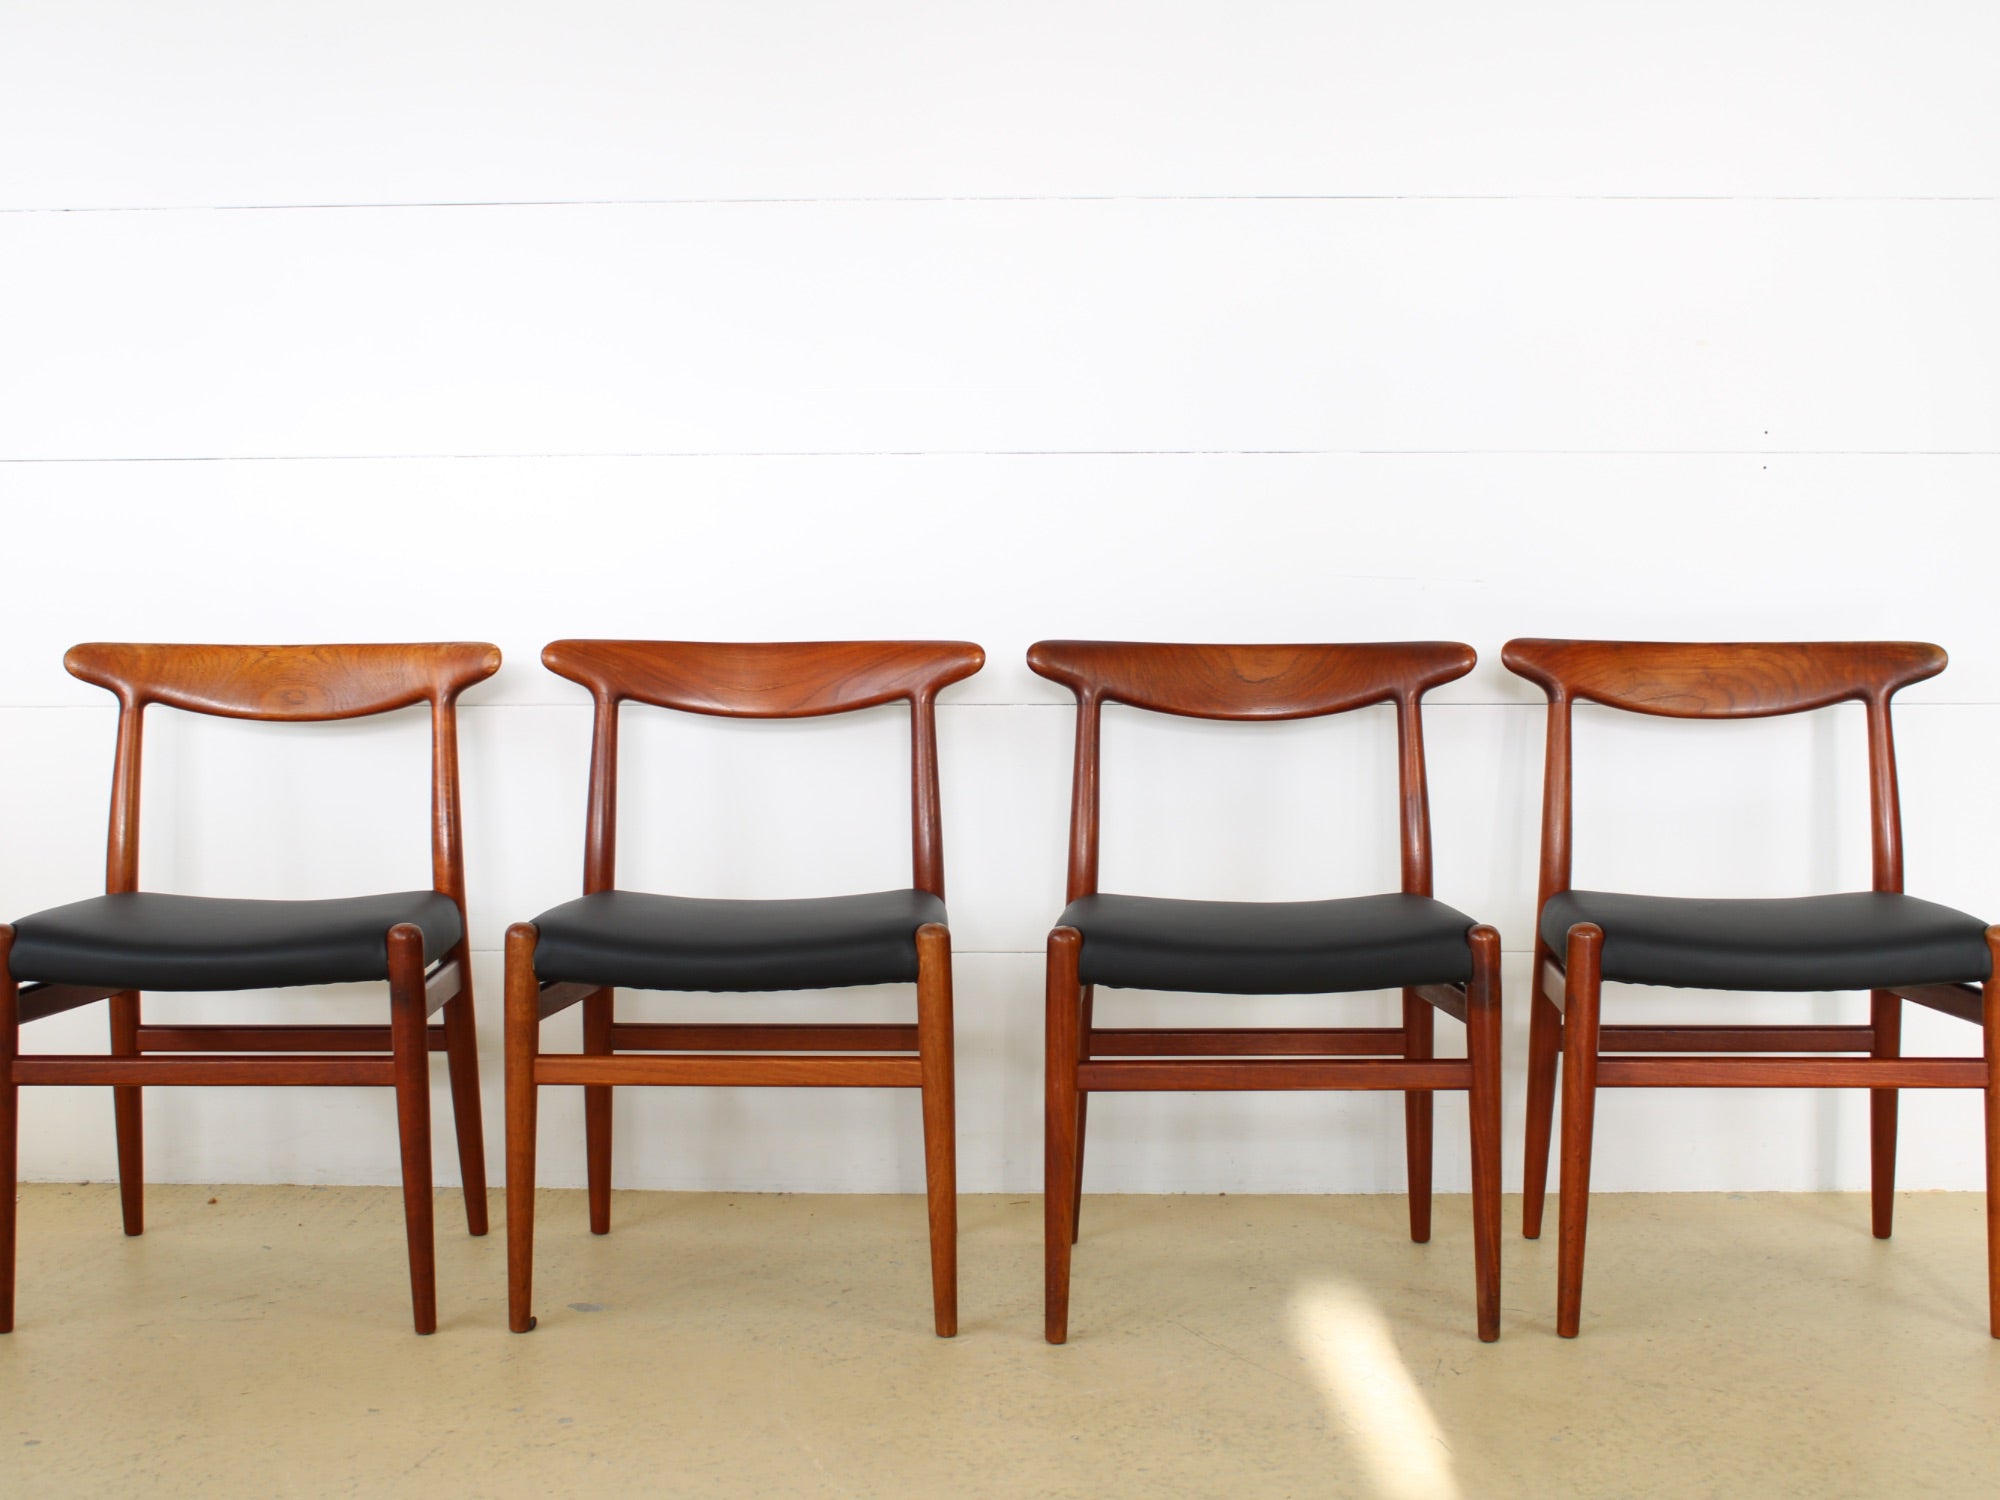 Esszimmer Stühle von Hans J. Wegner, CM Madsen